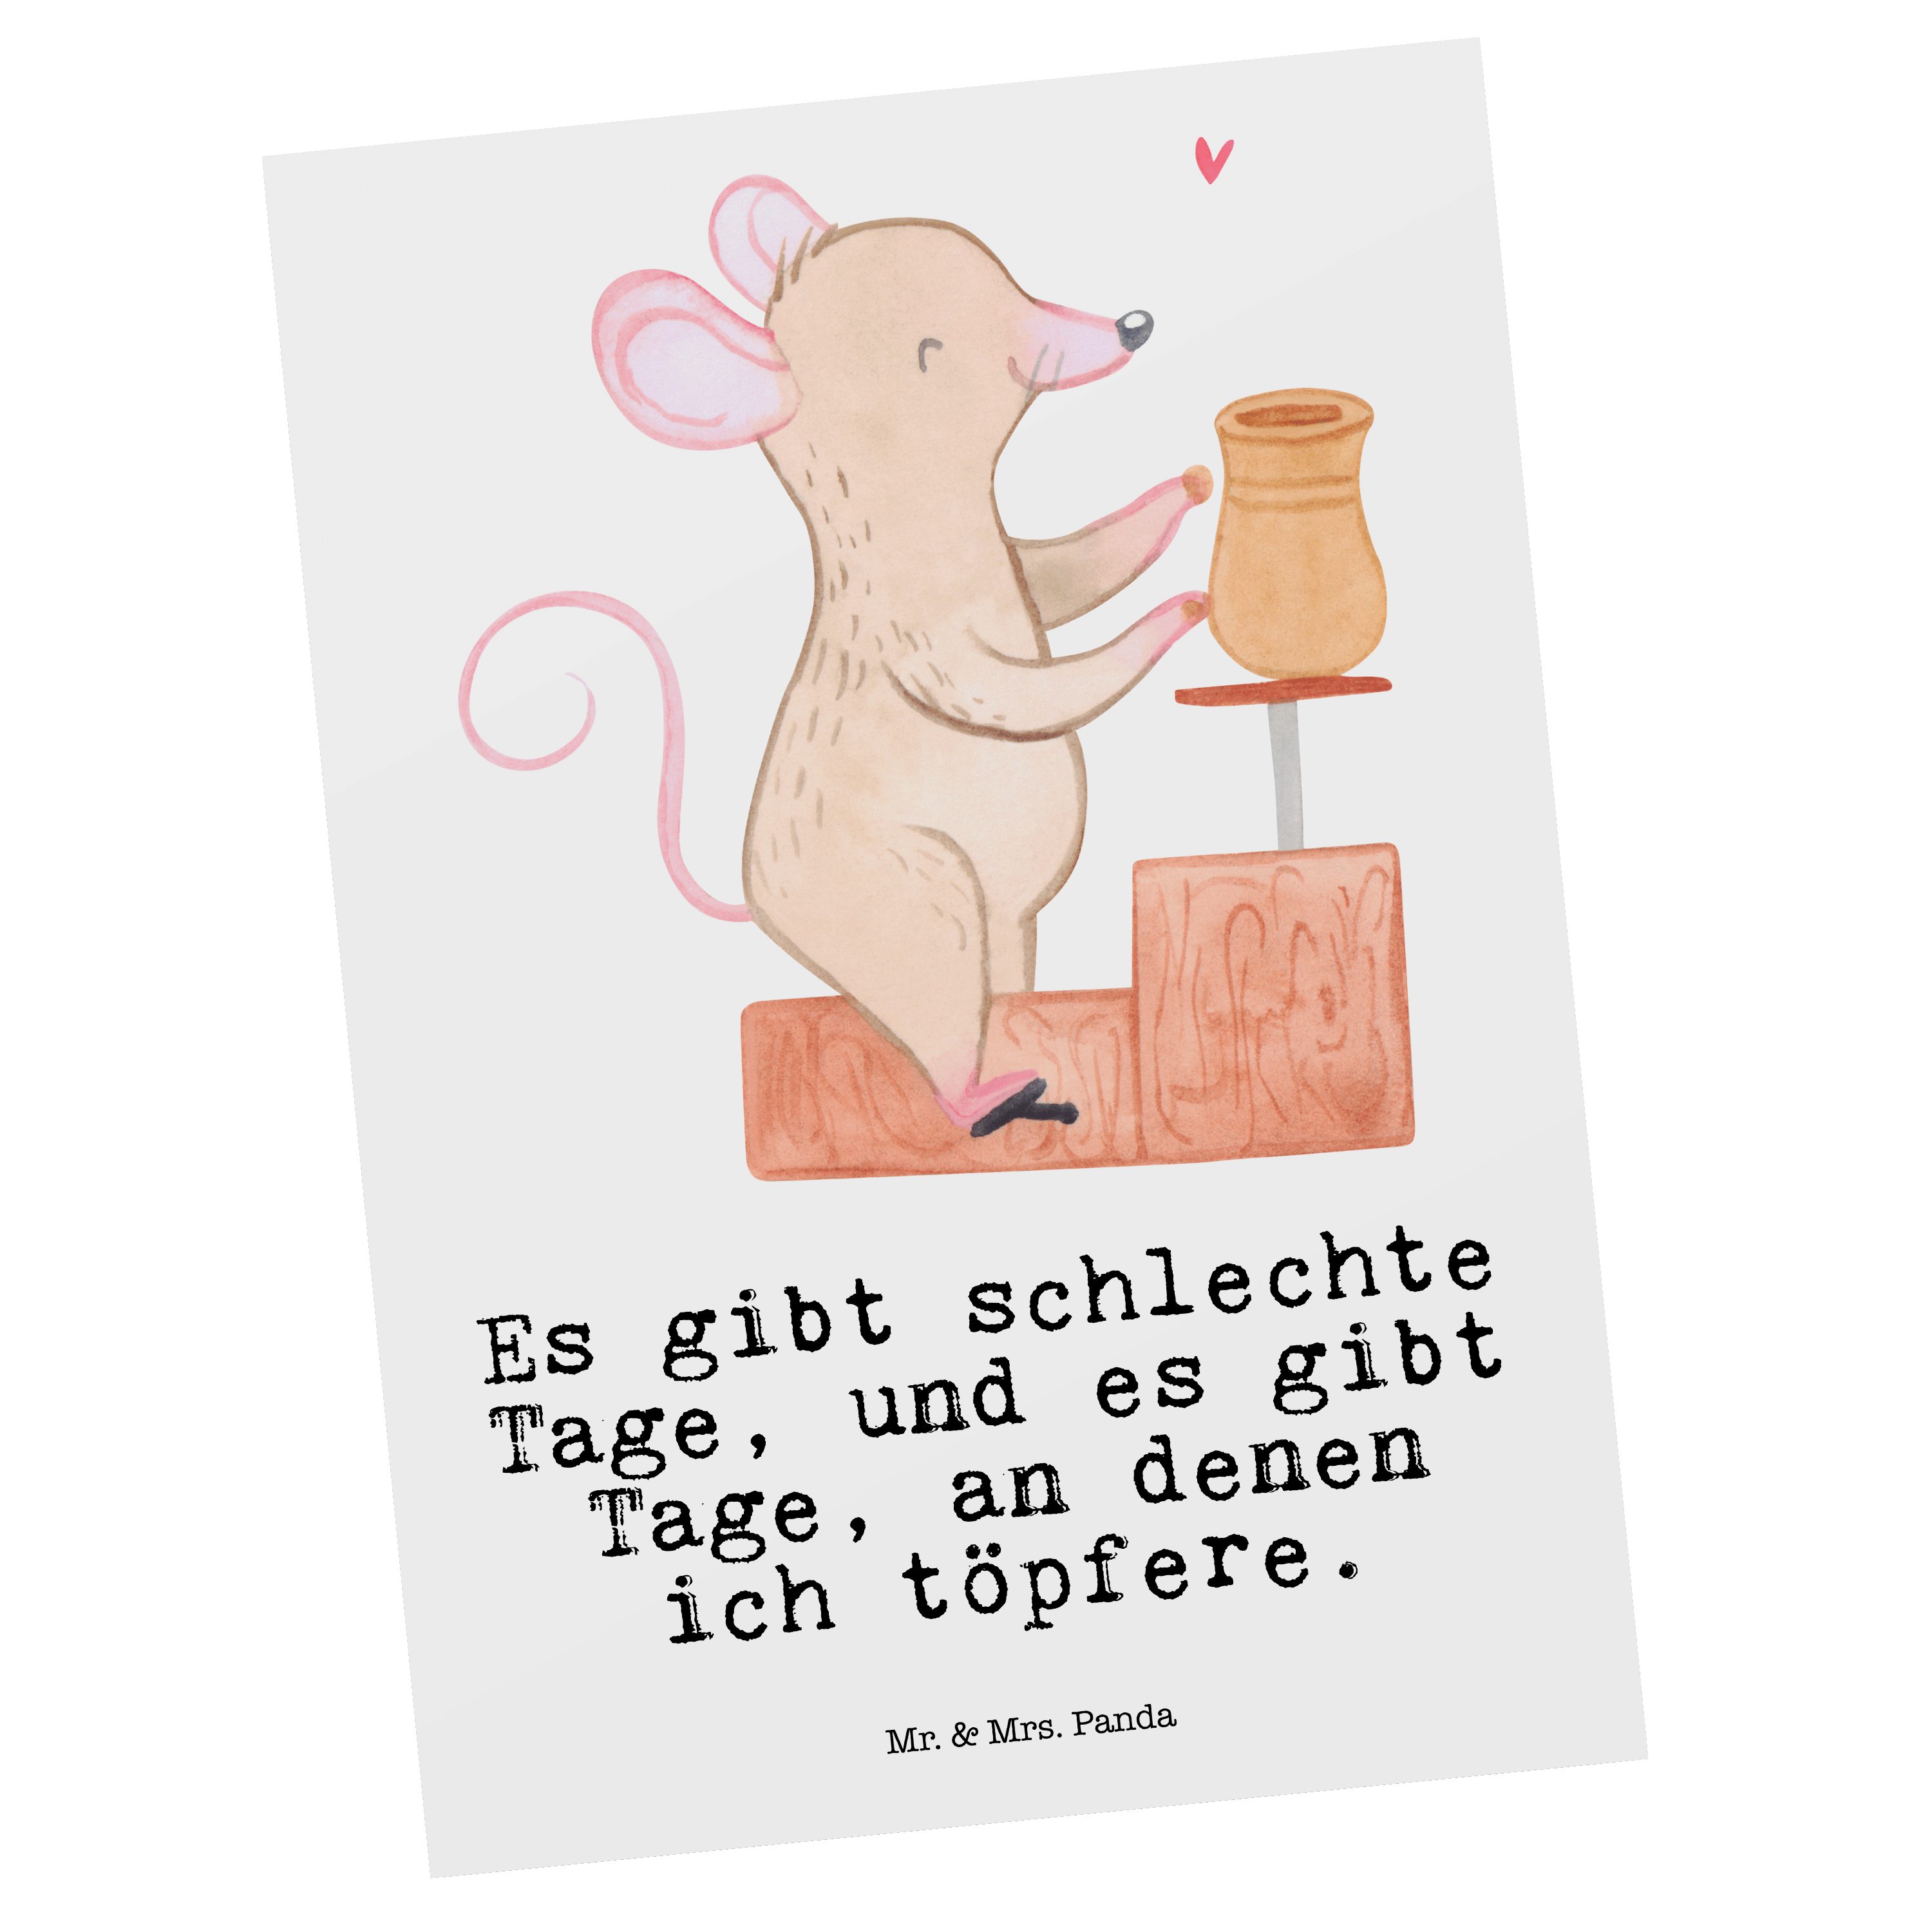 Mr. & Mrs. Panda Postkarte Maus Töpfern Tage - Weiß - Geschenk, Töpferkurs, Geburtstagskarte, Ei